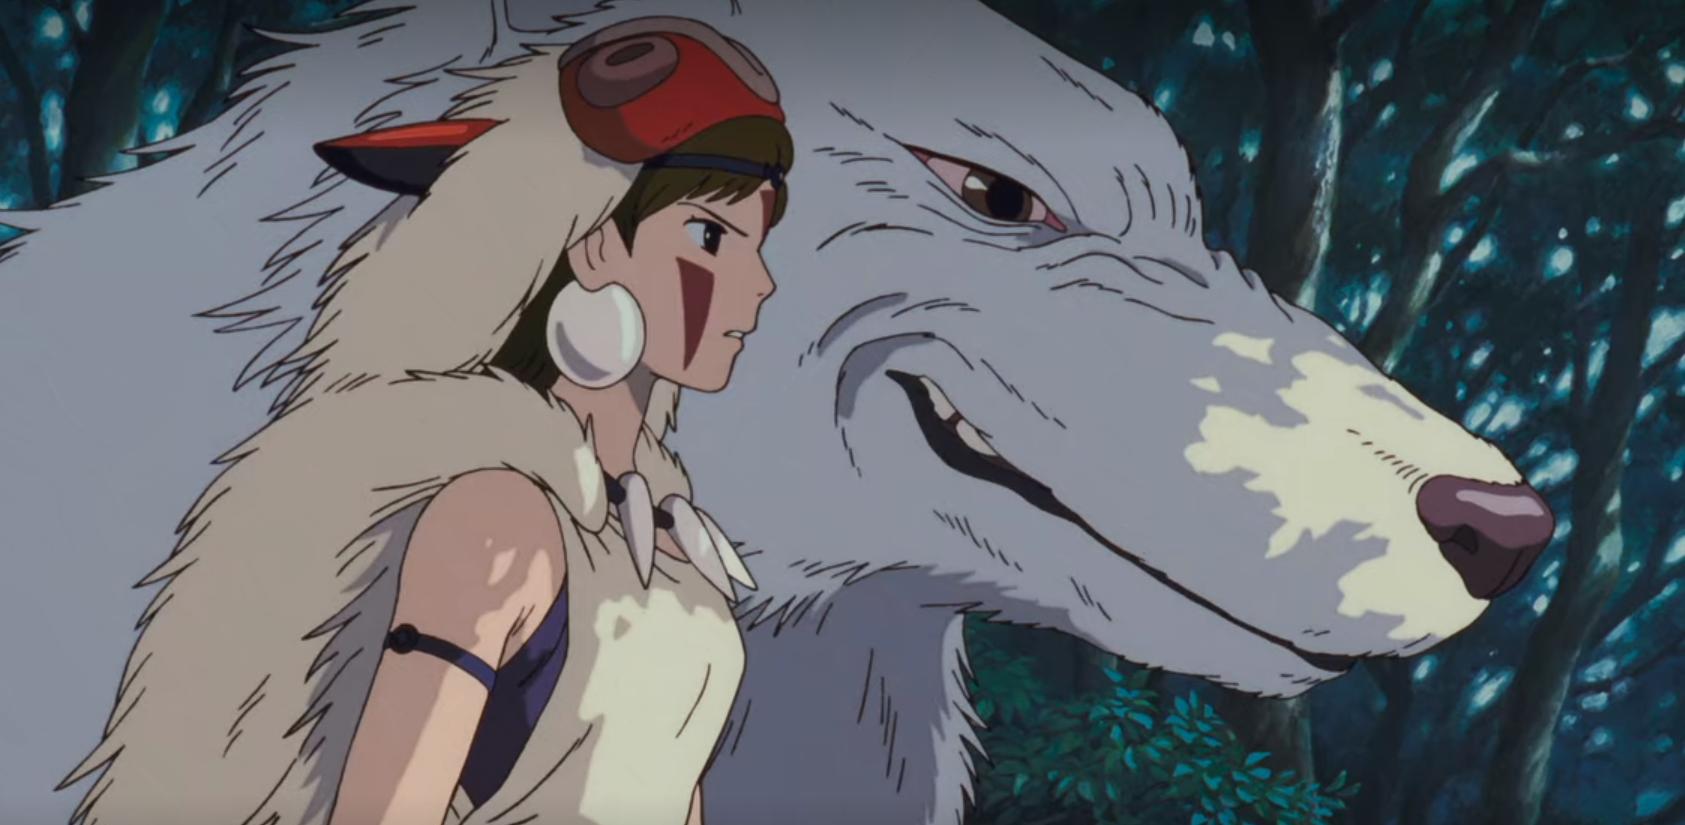 Princesse Mononoké est l'un des films le splus célèbres du Studio Ghibli